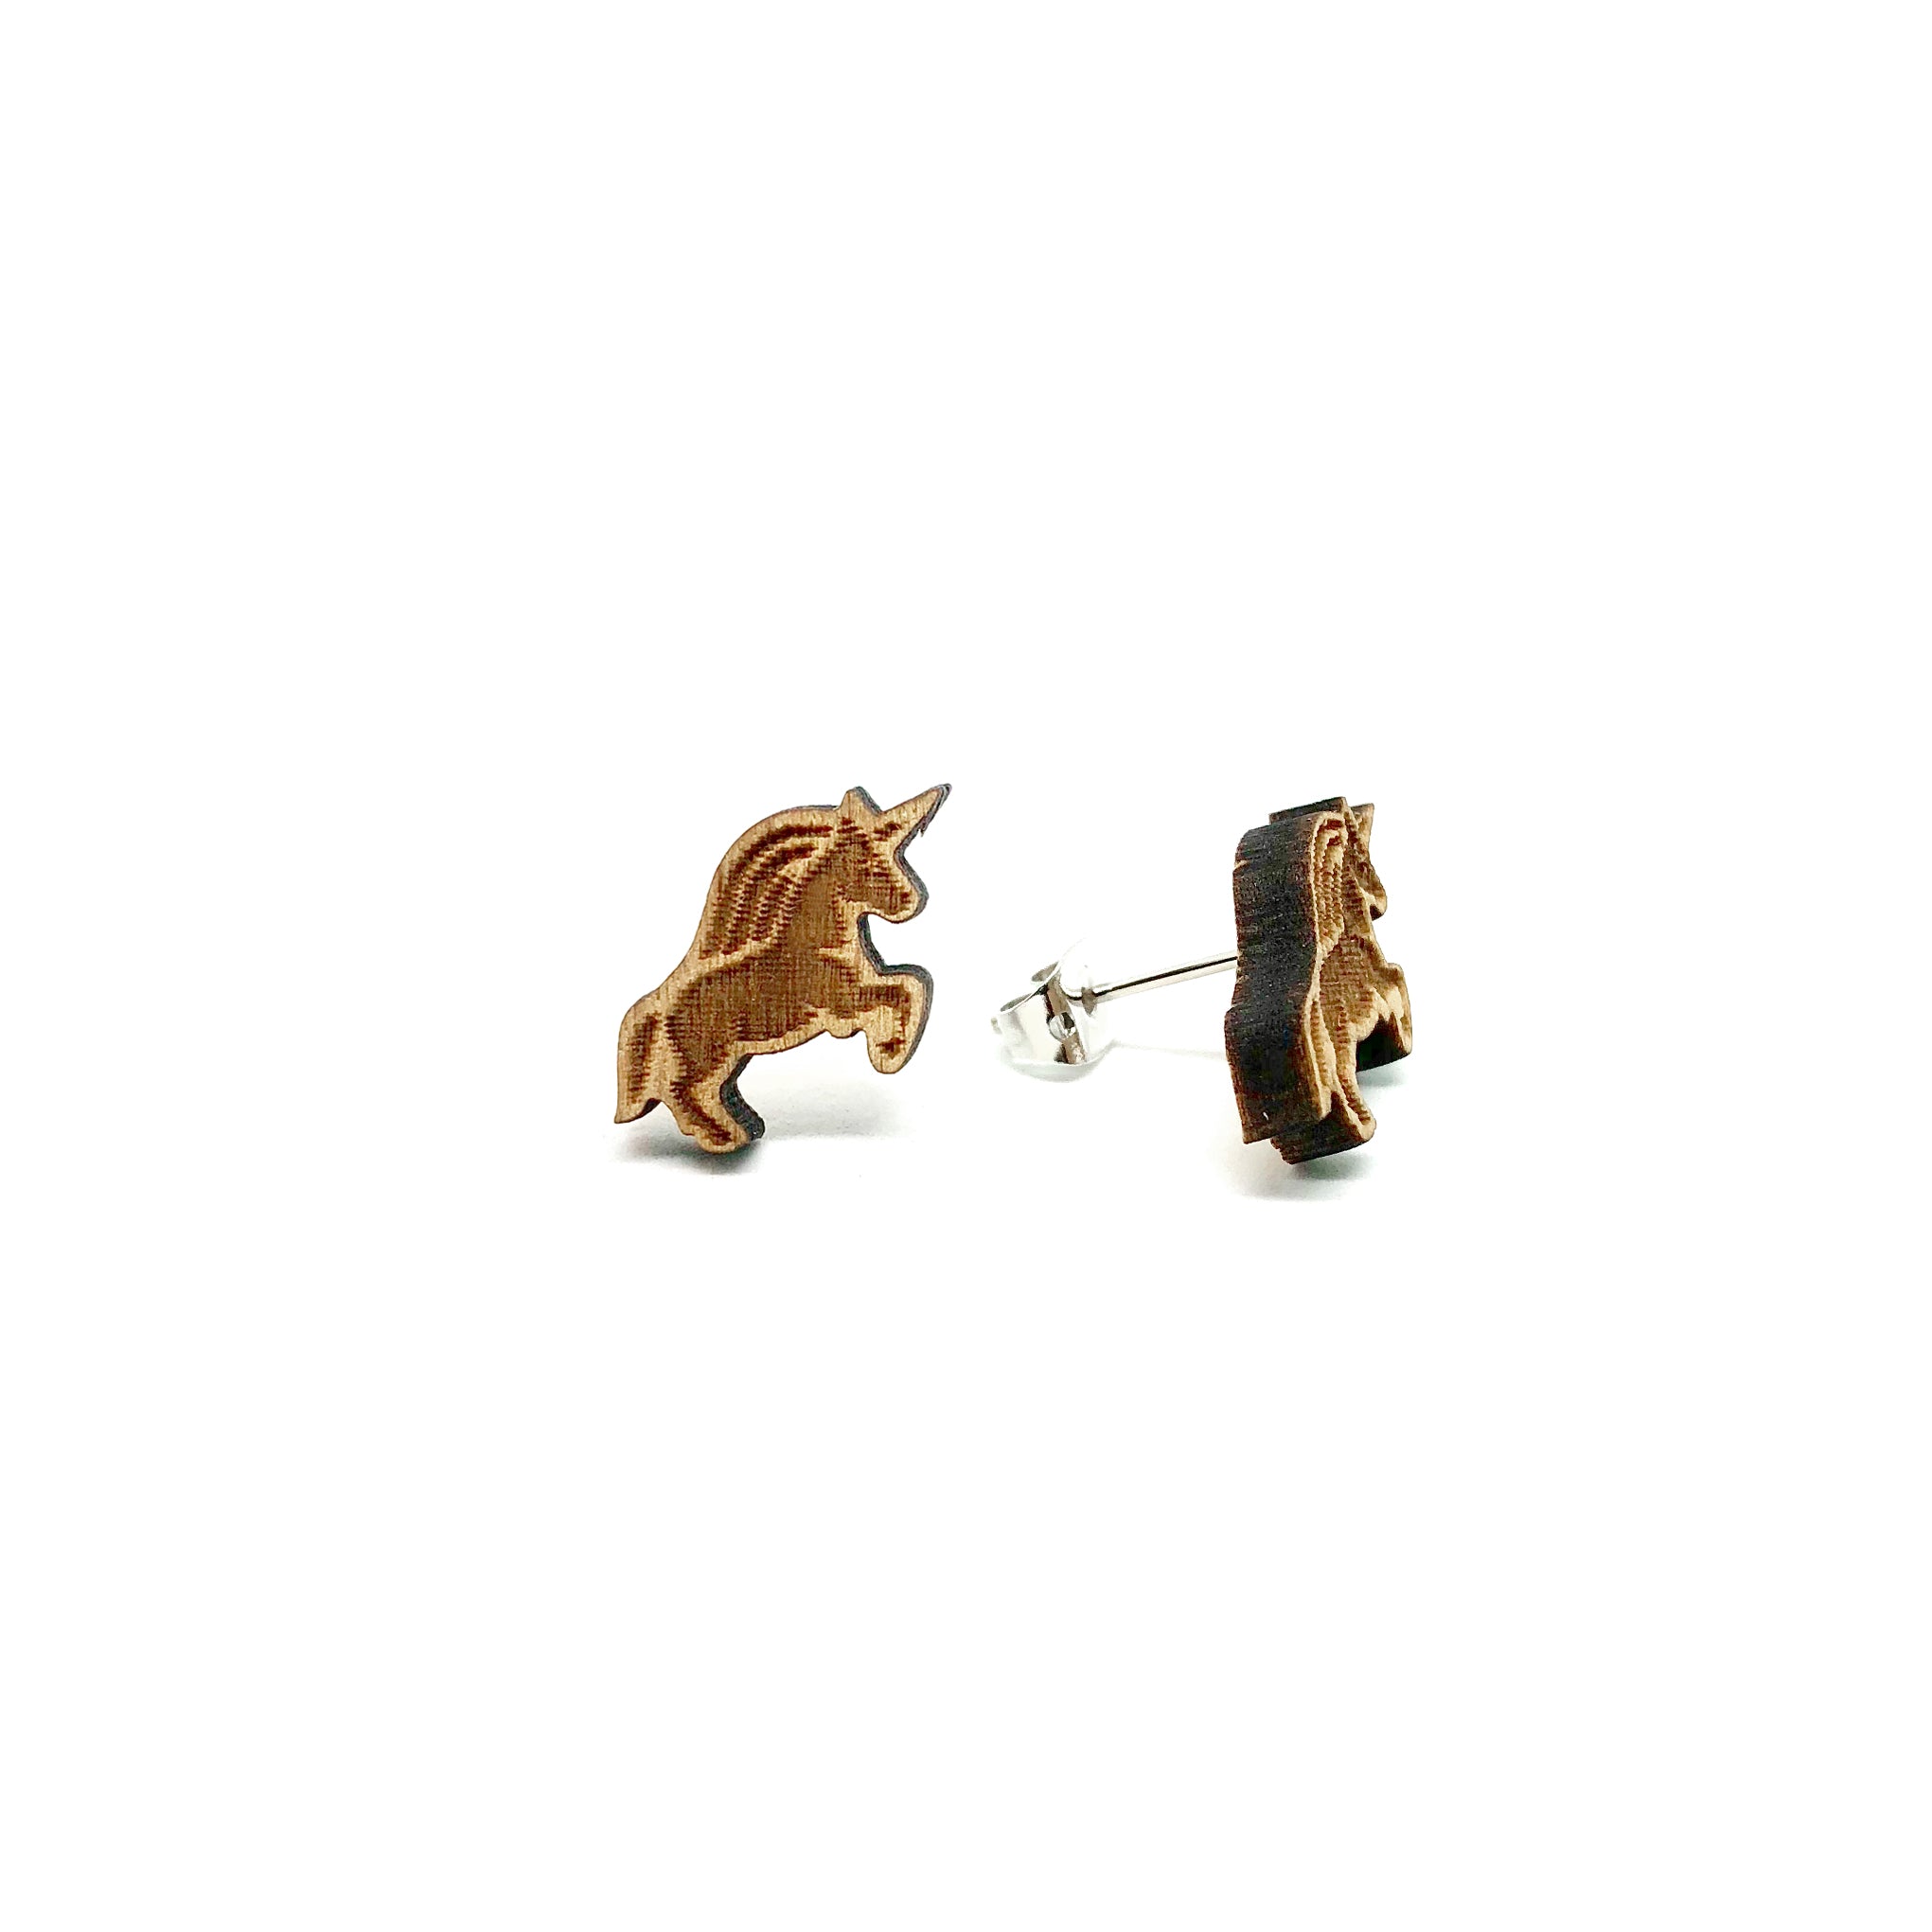 Magical Unicorn Laser Cut Wood Earrings - LM